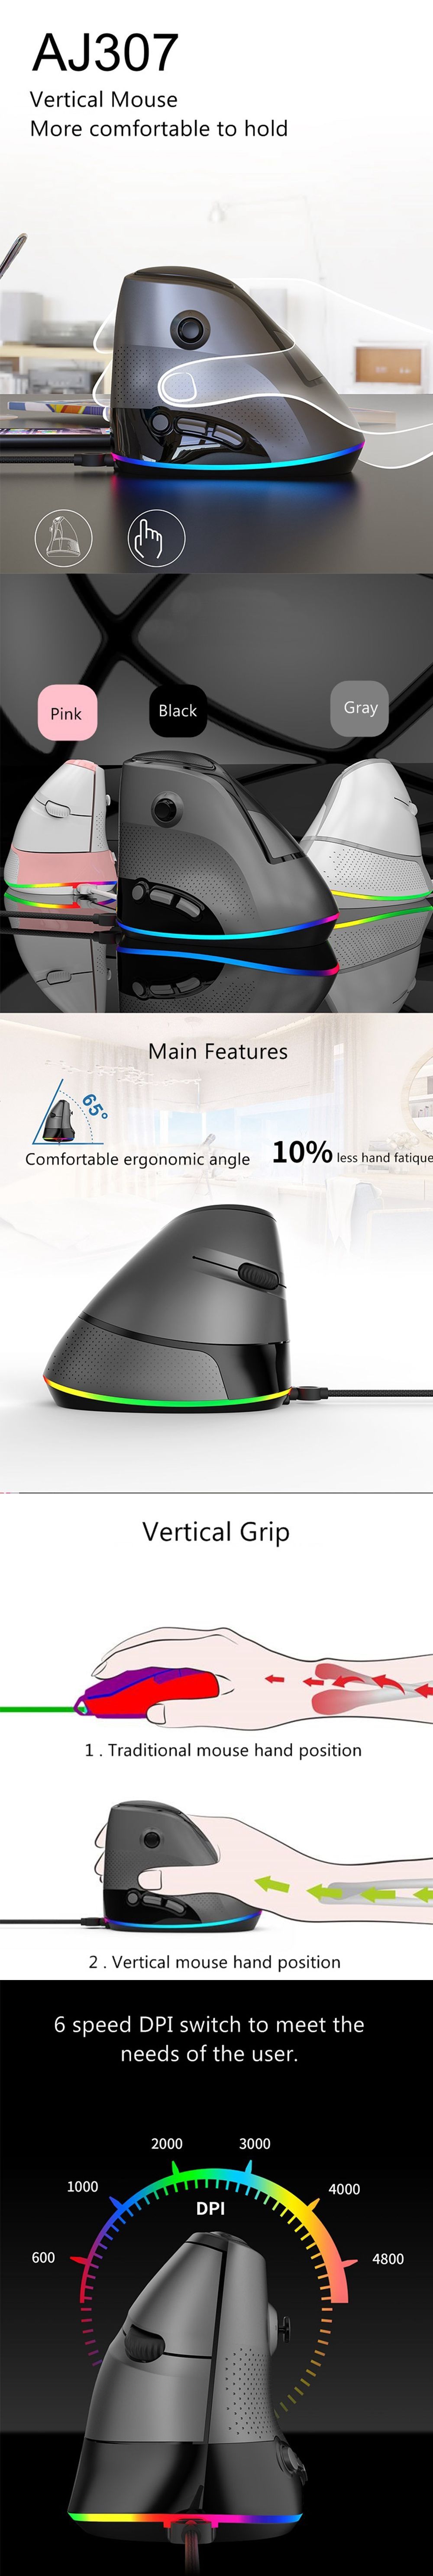 Ajazz-AJ307-4800DPI-USB-Wired-7-keys-Vertical-Mouse-Gaming-Mouse-RGB-Backlit--Ergonomic-Design-1589577